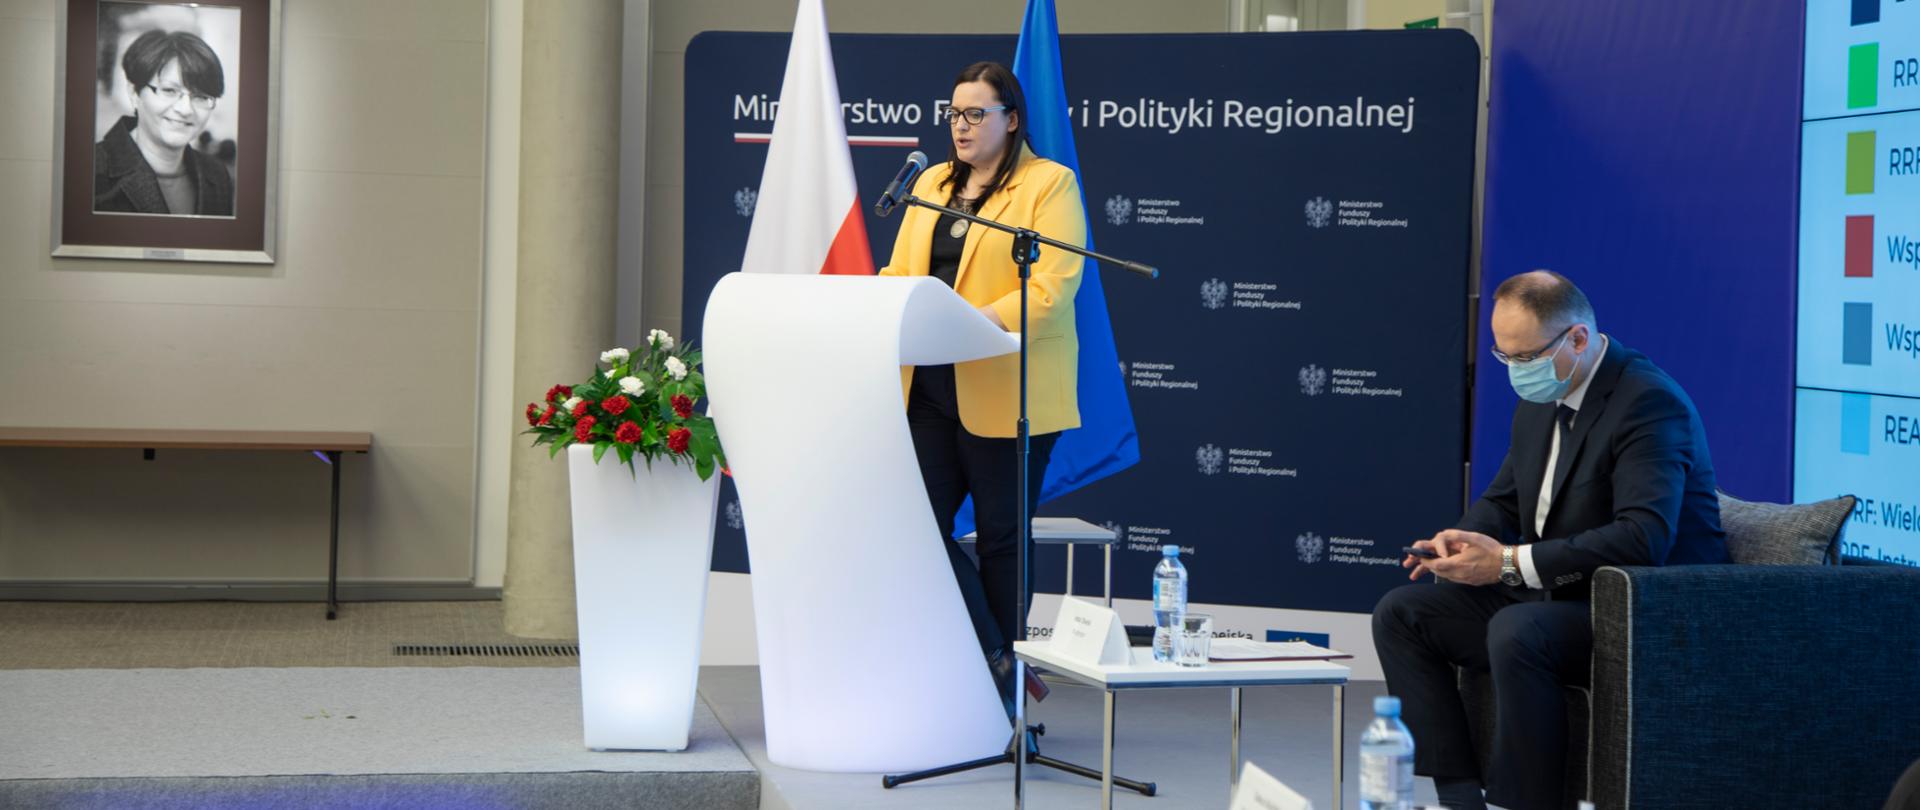 W sali konferencyjnej przy białej mównicy stoi wiceminister Małgorzata Jarosińska-Jedynak. Z lewej strony biało-czerwone kwiaty. Na ścianie portret Grażyny Gęsickiej. Z prawej strony w fotelu siedzi mężczyzna. Z tyłu flagi PL i UE oraz ścianka MFiPR.